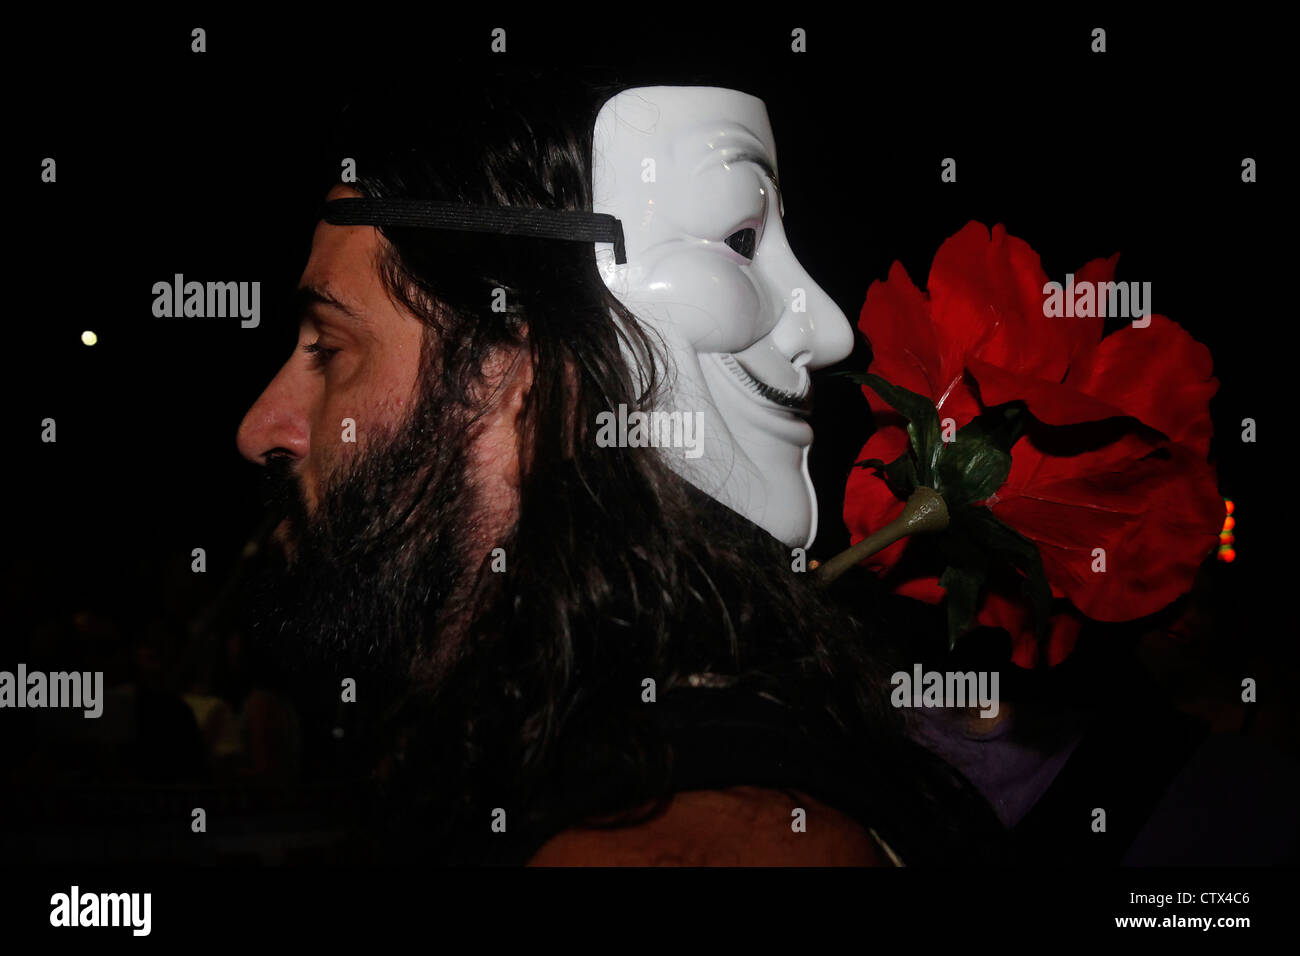 Un manifestante israeliano indossa una maschera Guy Fawkes usata dal movimento anonimo partecipa al costo della protesta vivente a Tel Aviv Israele. La maschera di Guy Fawkes è un simbolo ben noto per il gruppo hacktivist on-line Anonymous utilizzato nelle proteste anti-government e anti-establishment in tutto il mondo. Foto Stock